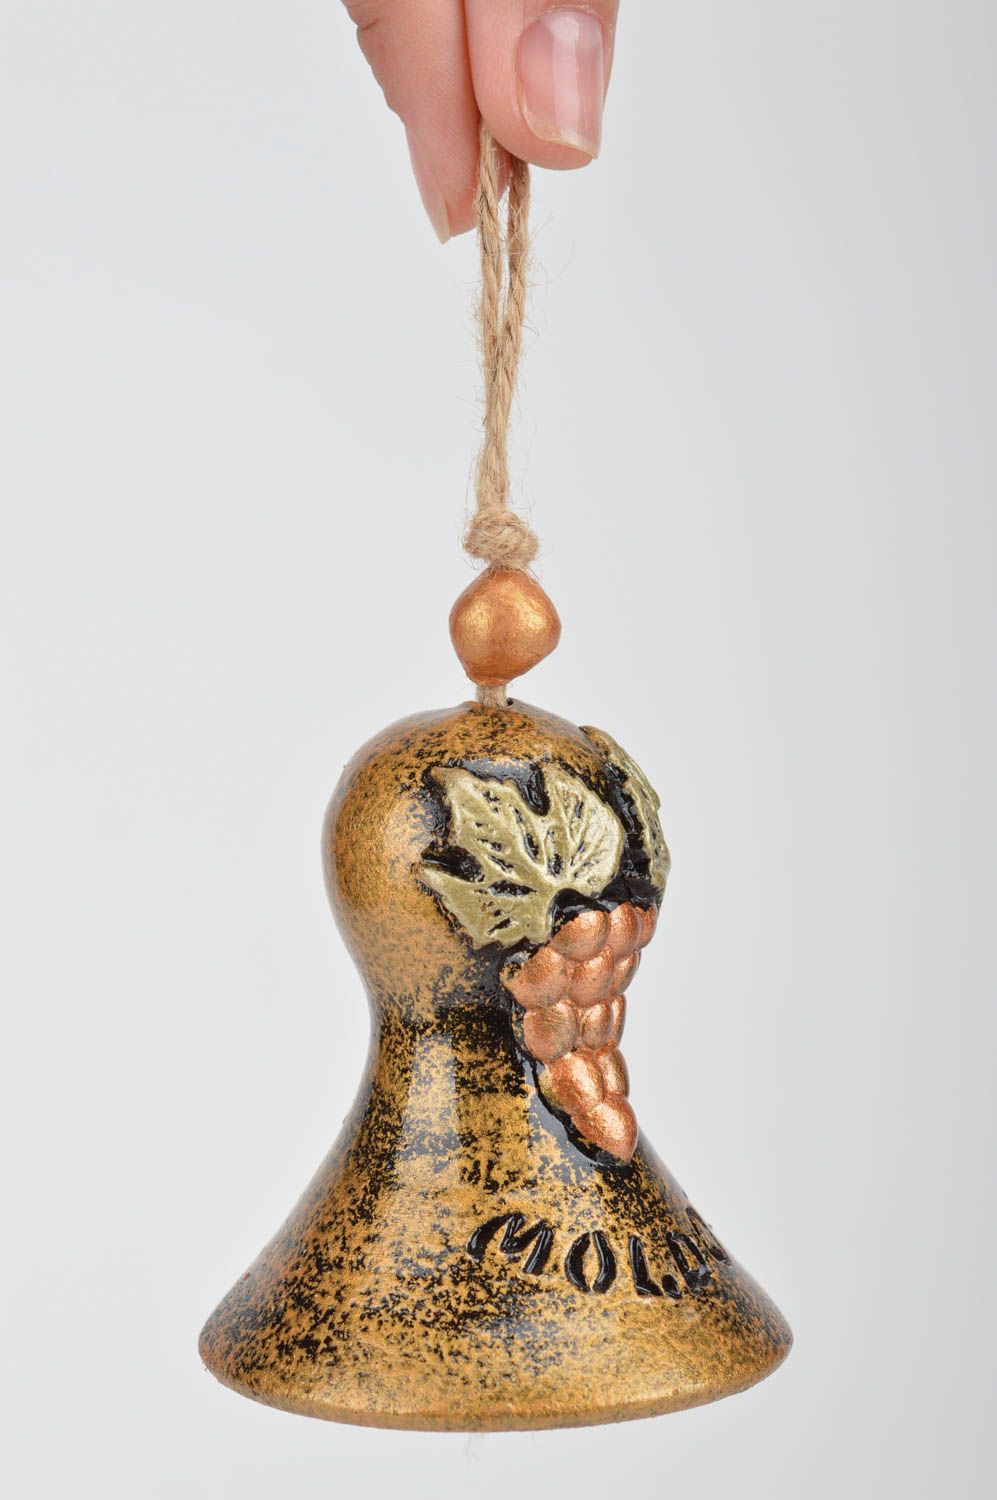 Глиняный колокольчик расписанный красками с виноградными гроздьями ручной работы фото 3